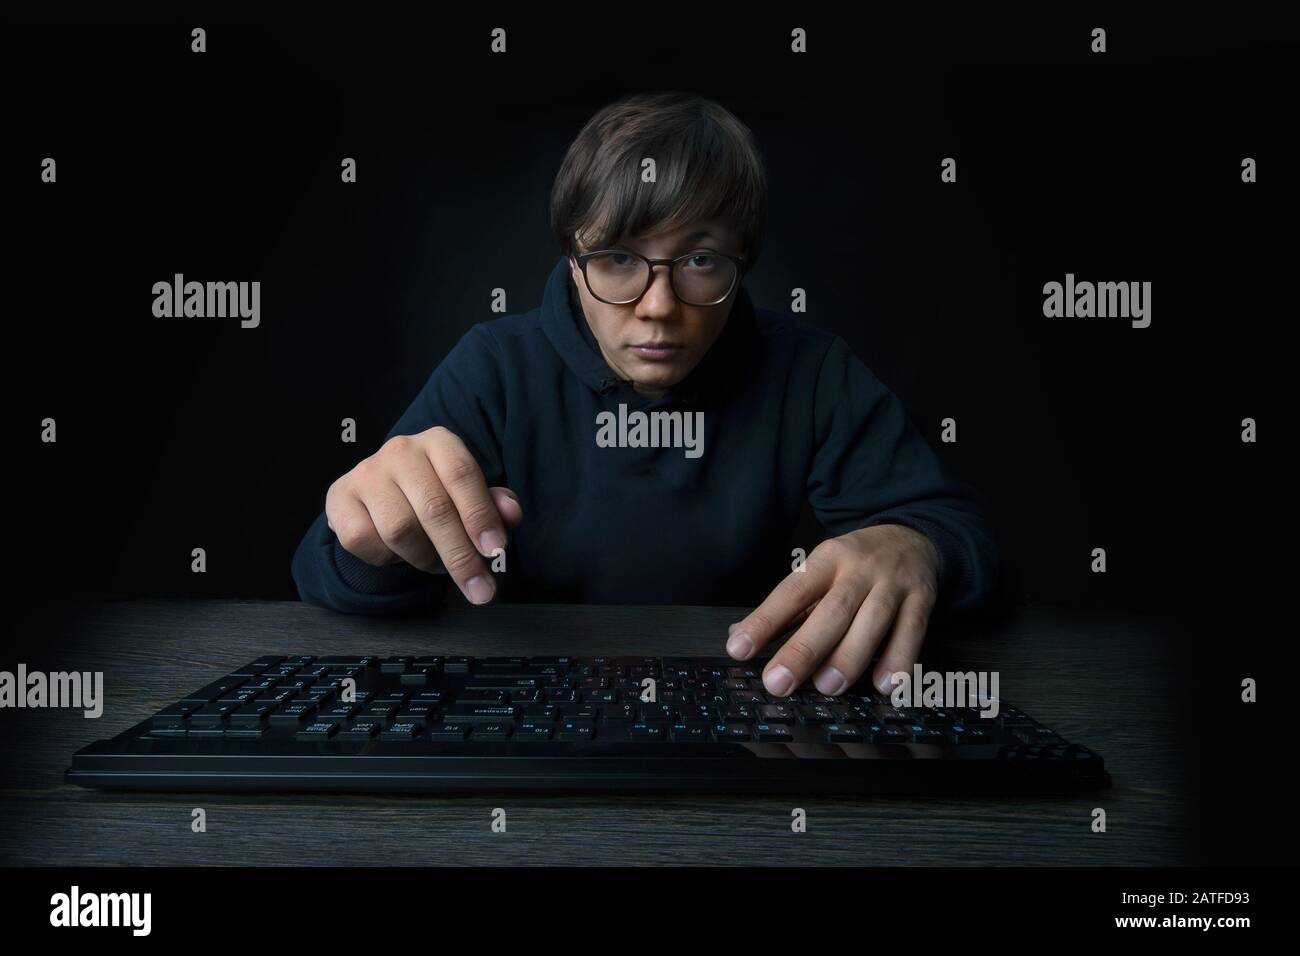 el programador hombre sostiene las manos sobre el teclado y mira la cámara,  sobre fondo oscuro Fotografía de stock - Alamy